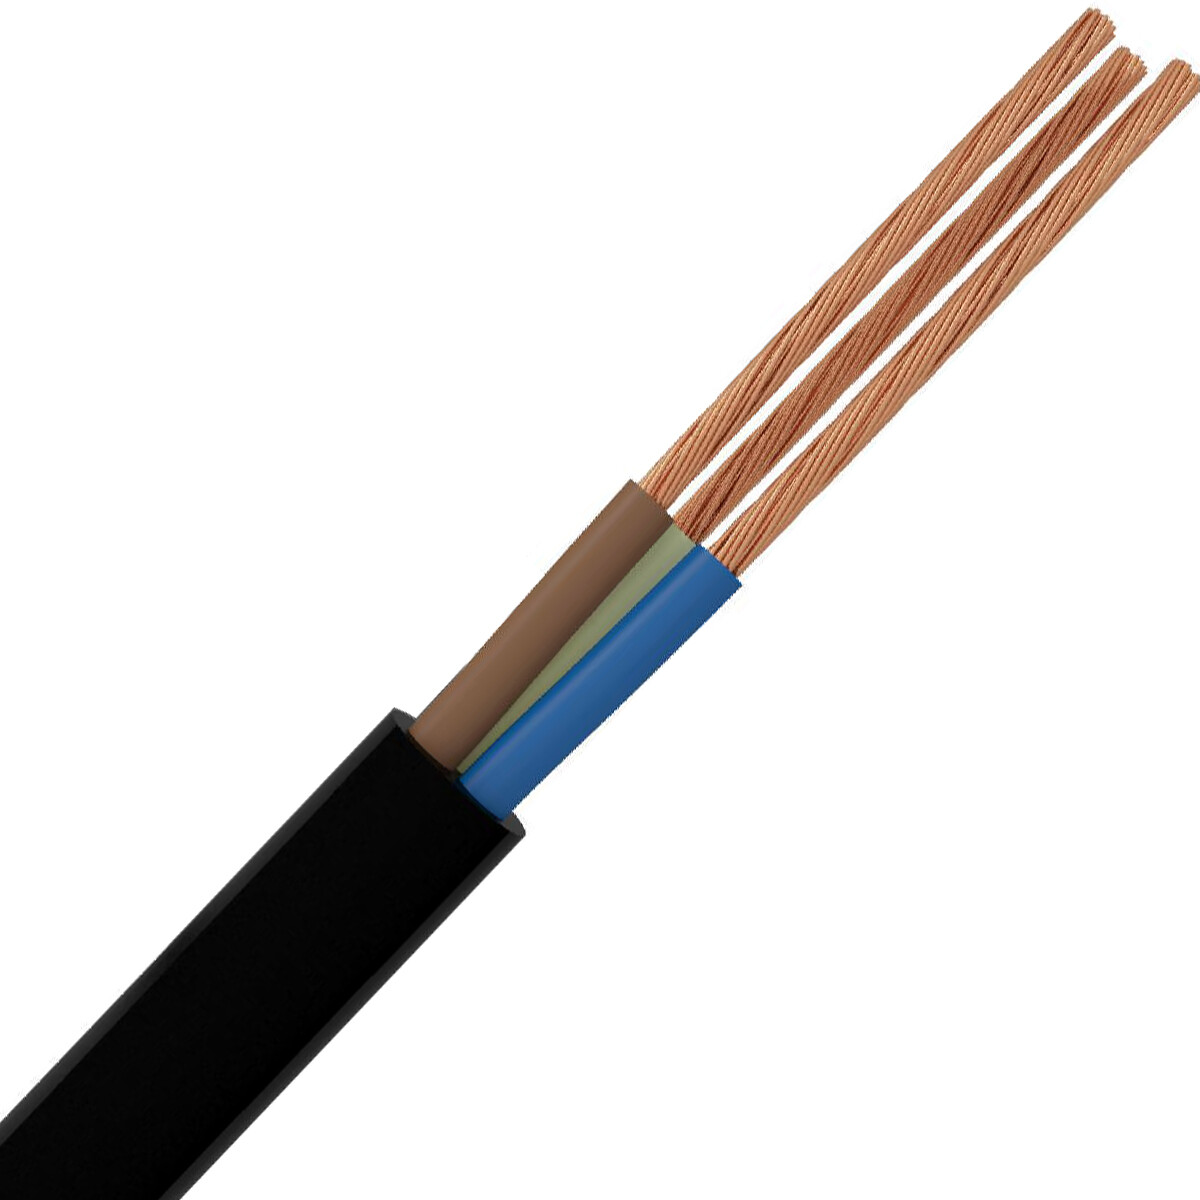 VMVL Kabel - Stroomkabel - 3x1.5mm - 3 Aderig - 100 Meter - H05VV-F - Zwart